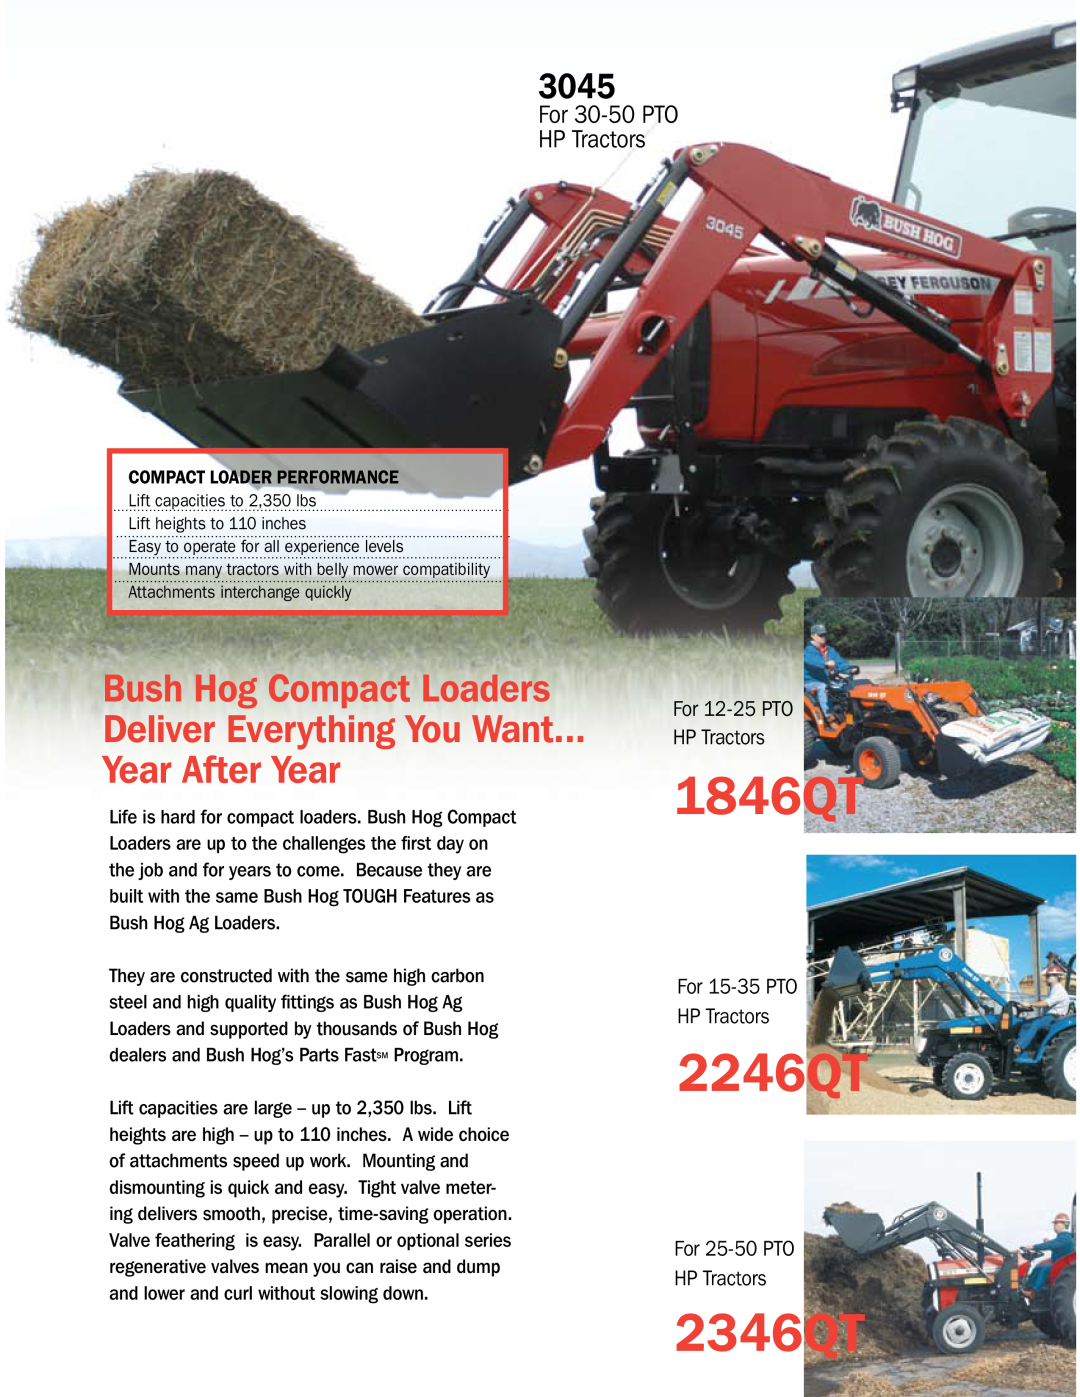 Bush Hog Compact & Ag Loaders manual 1846QT, 2246QT, 2346QT, 3045, For 30-50PTO HP Tractors, For 12-25PTO HP Tractors 